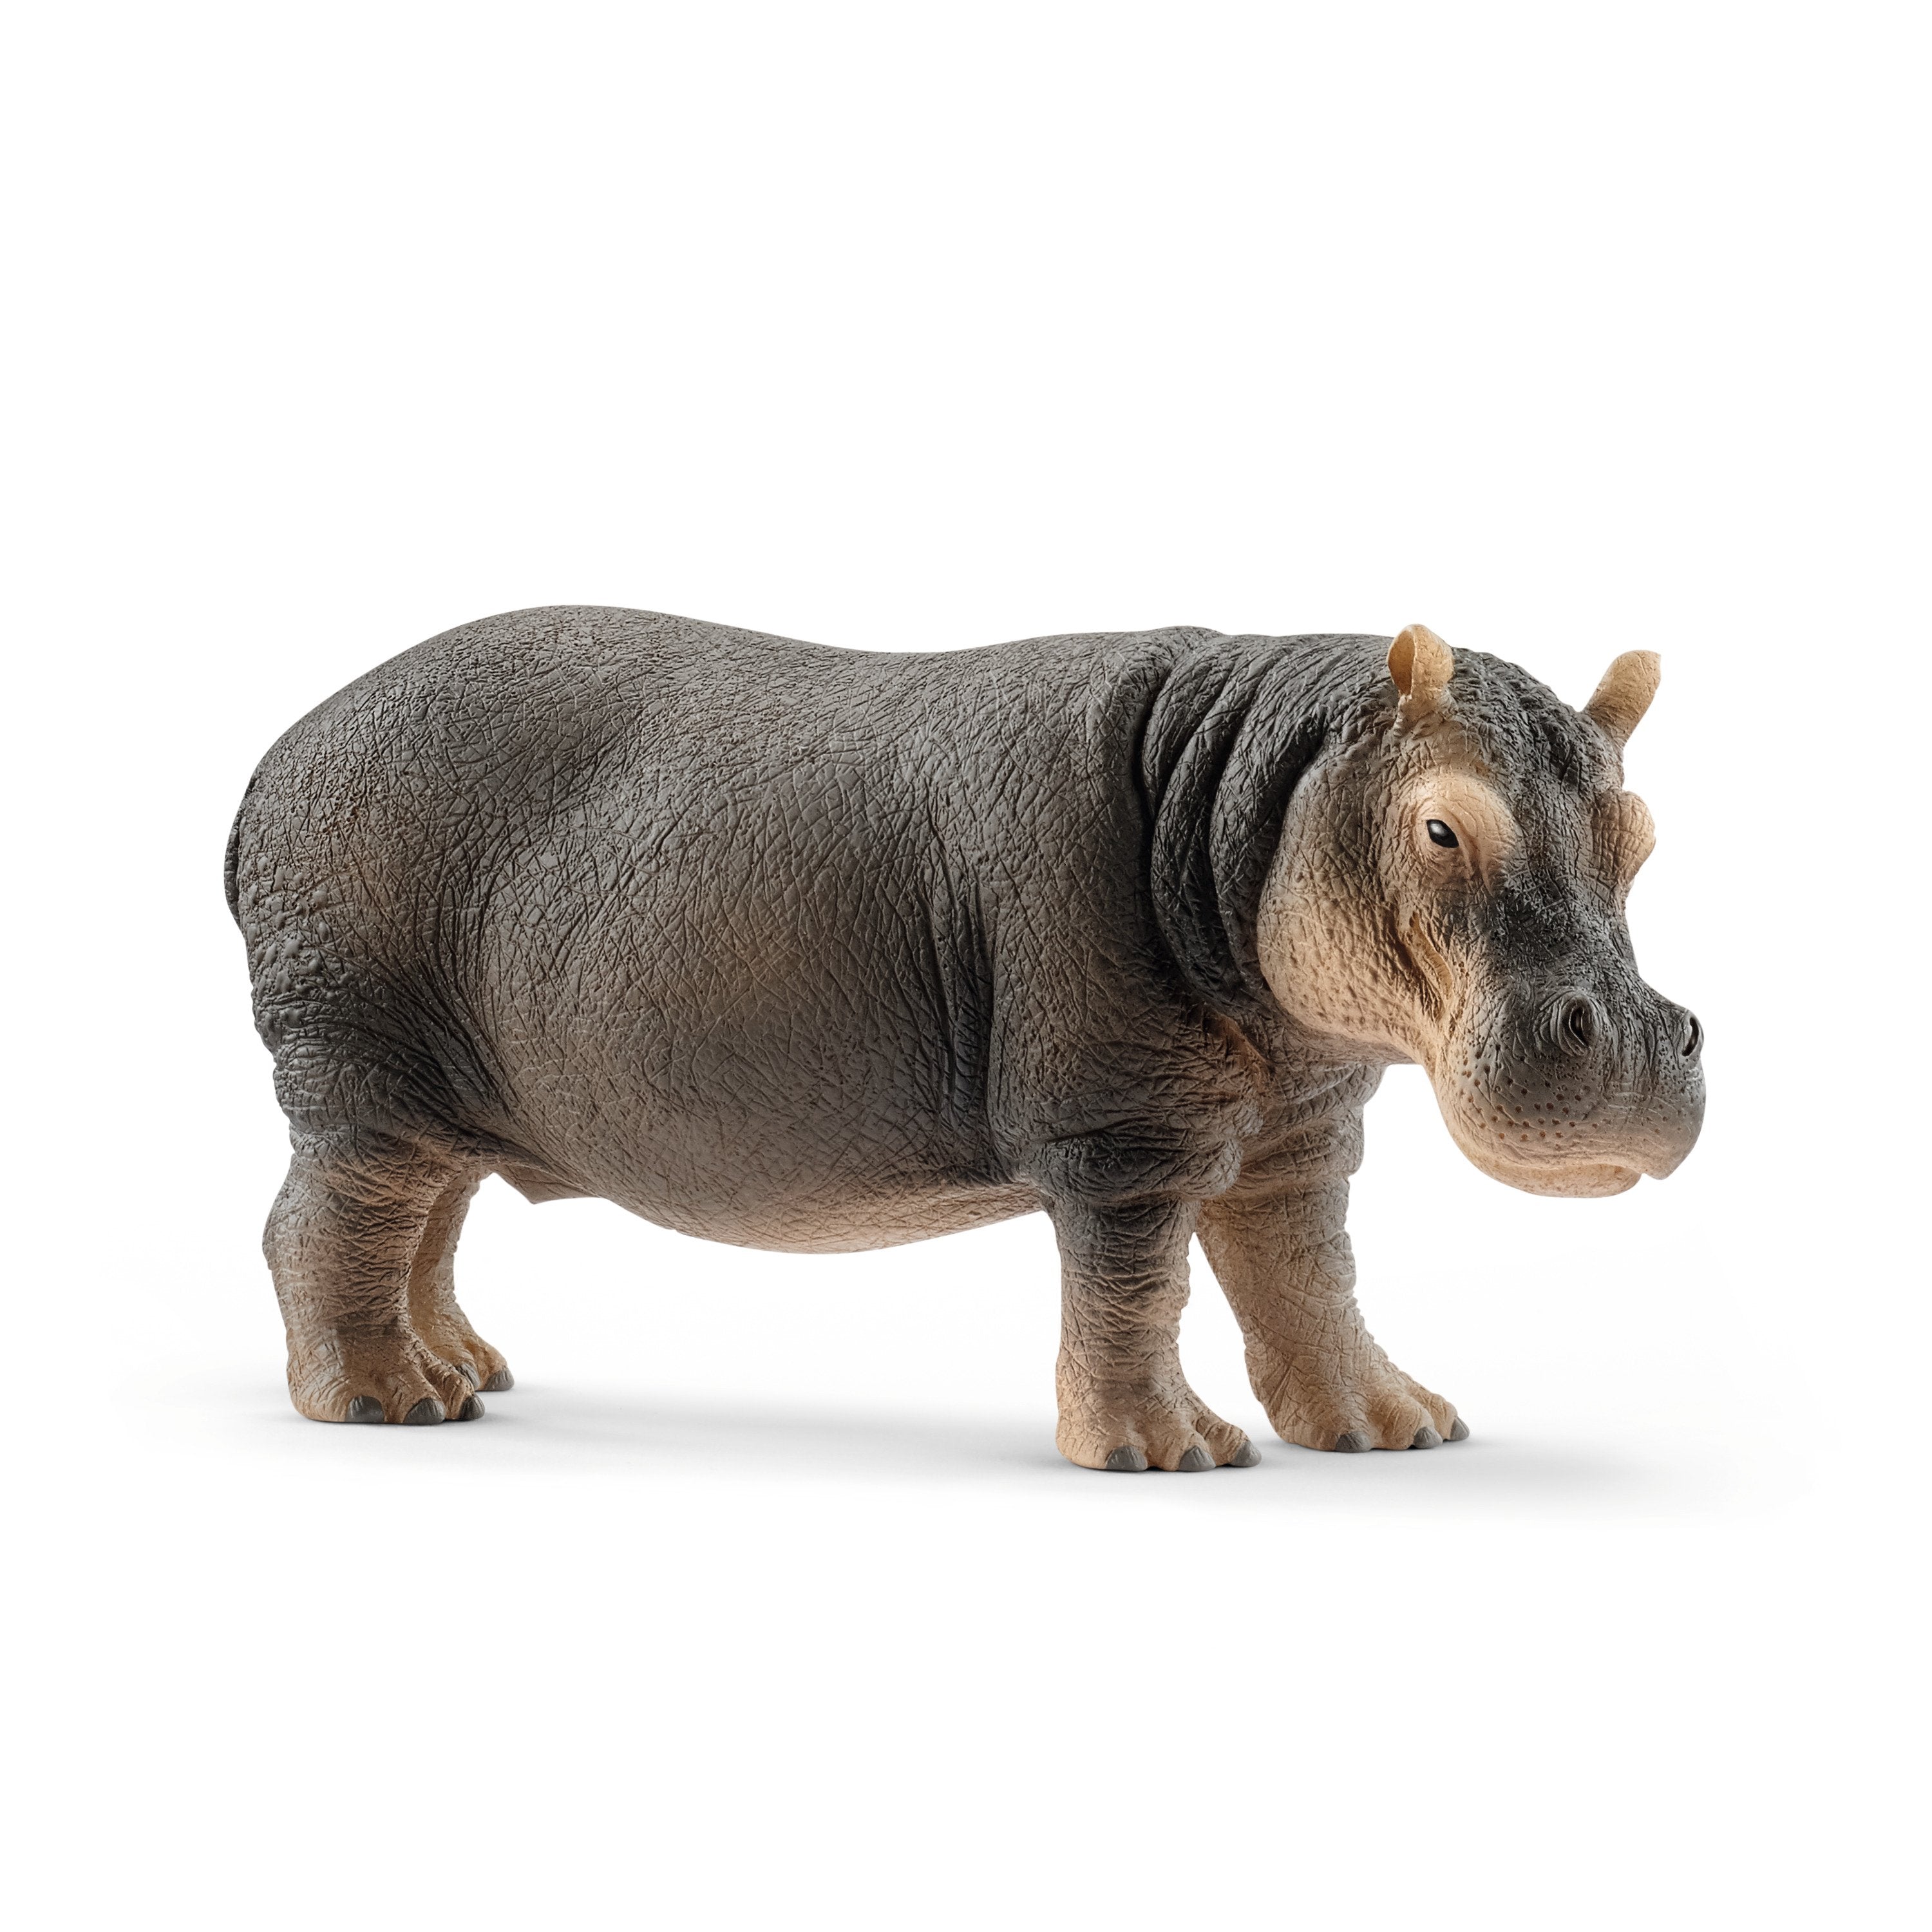 Schleich Wild Life Hippopotamus Animal Figure